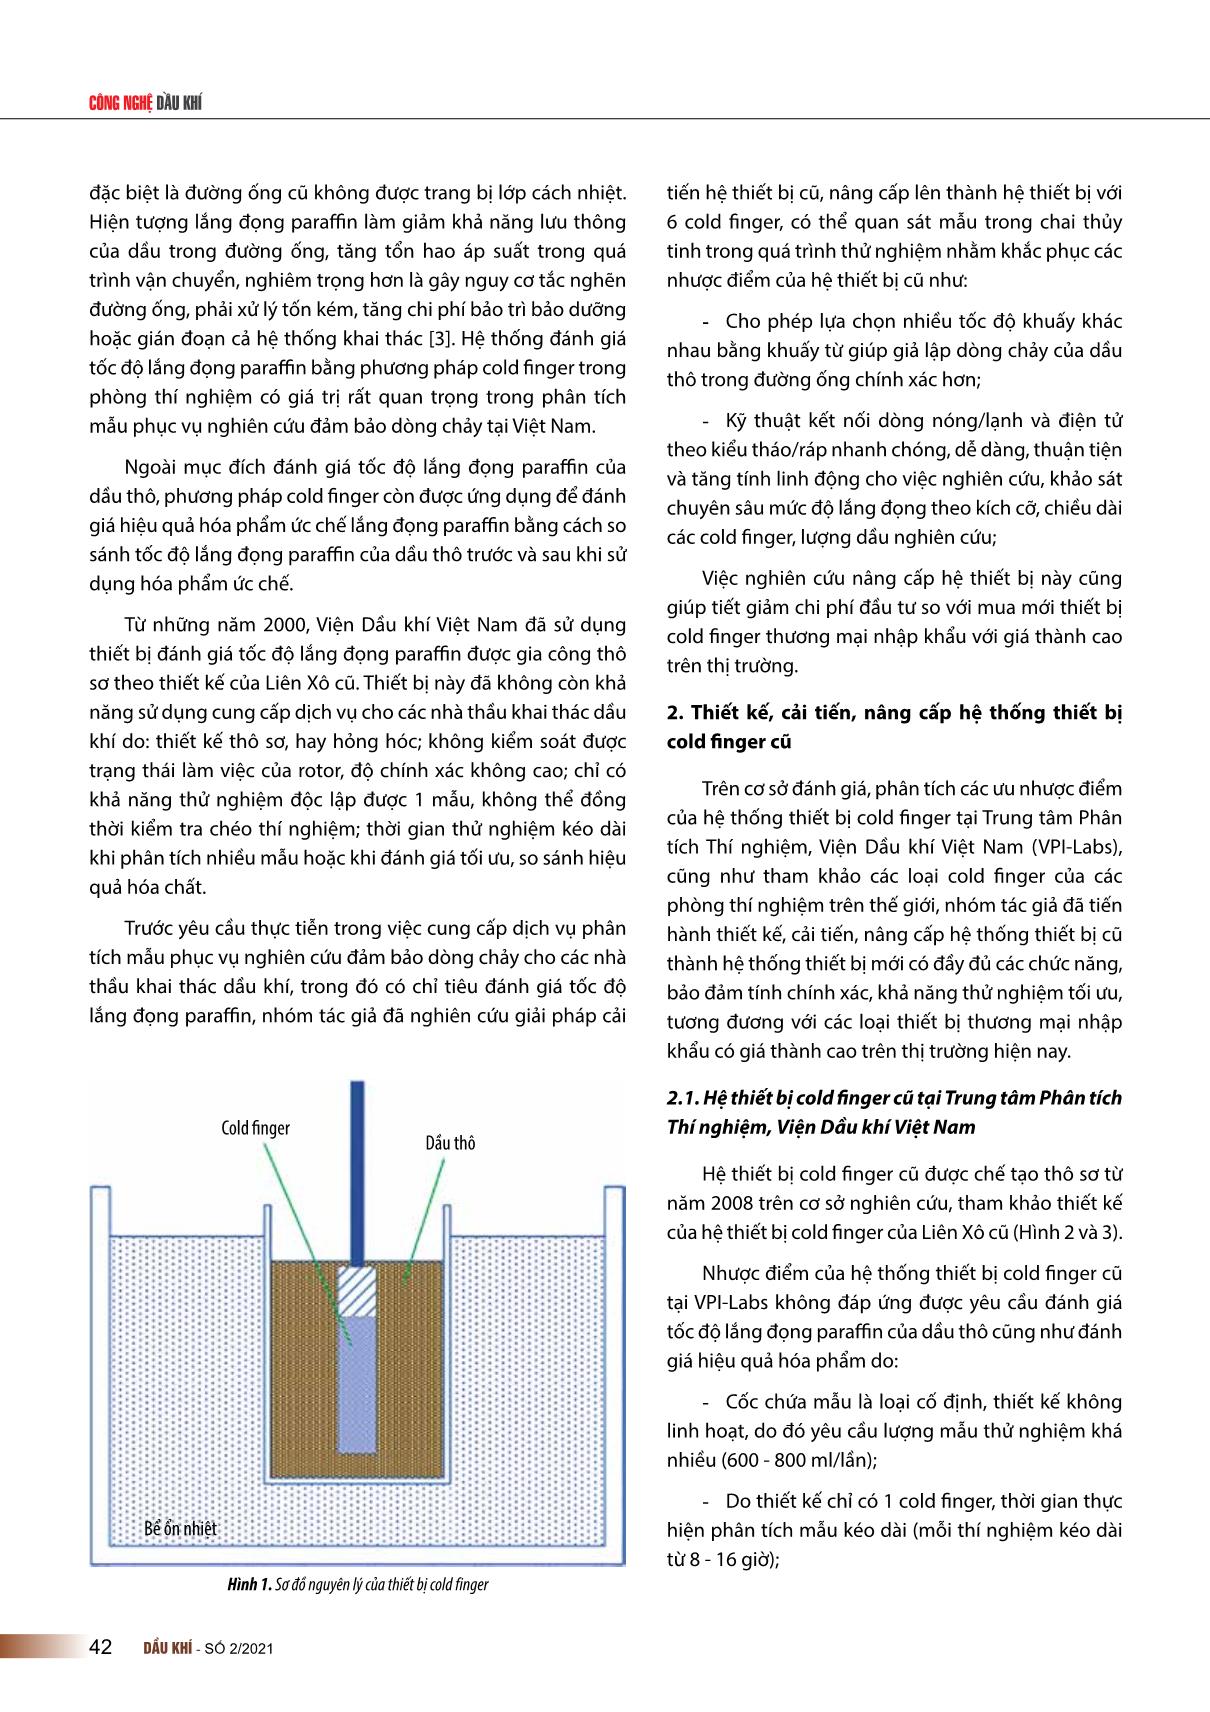 Nghiên cứu, chế tạo hệ thiết bị thí nghiệm dùng để xác định tốc độ lắng đọng paraffin trong dầu thô (cold finger) trang 2